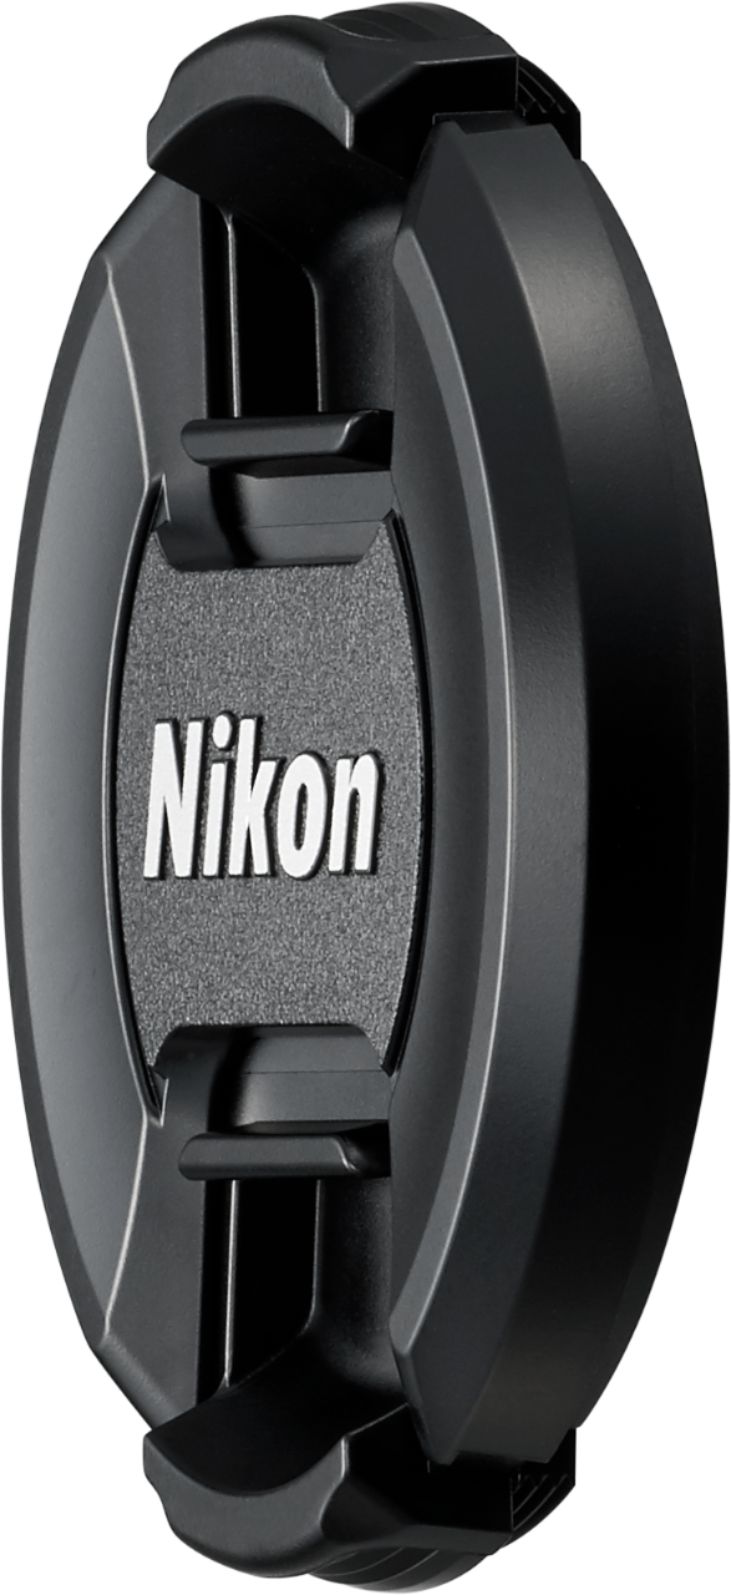 Nikon AF-P DX NIKKOR 18-55mm f/3.5-5.6G VR Zoom Lens for APS-C F